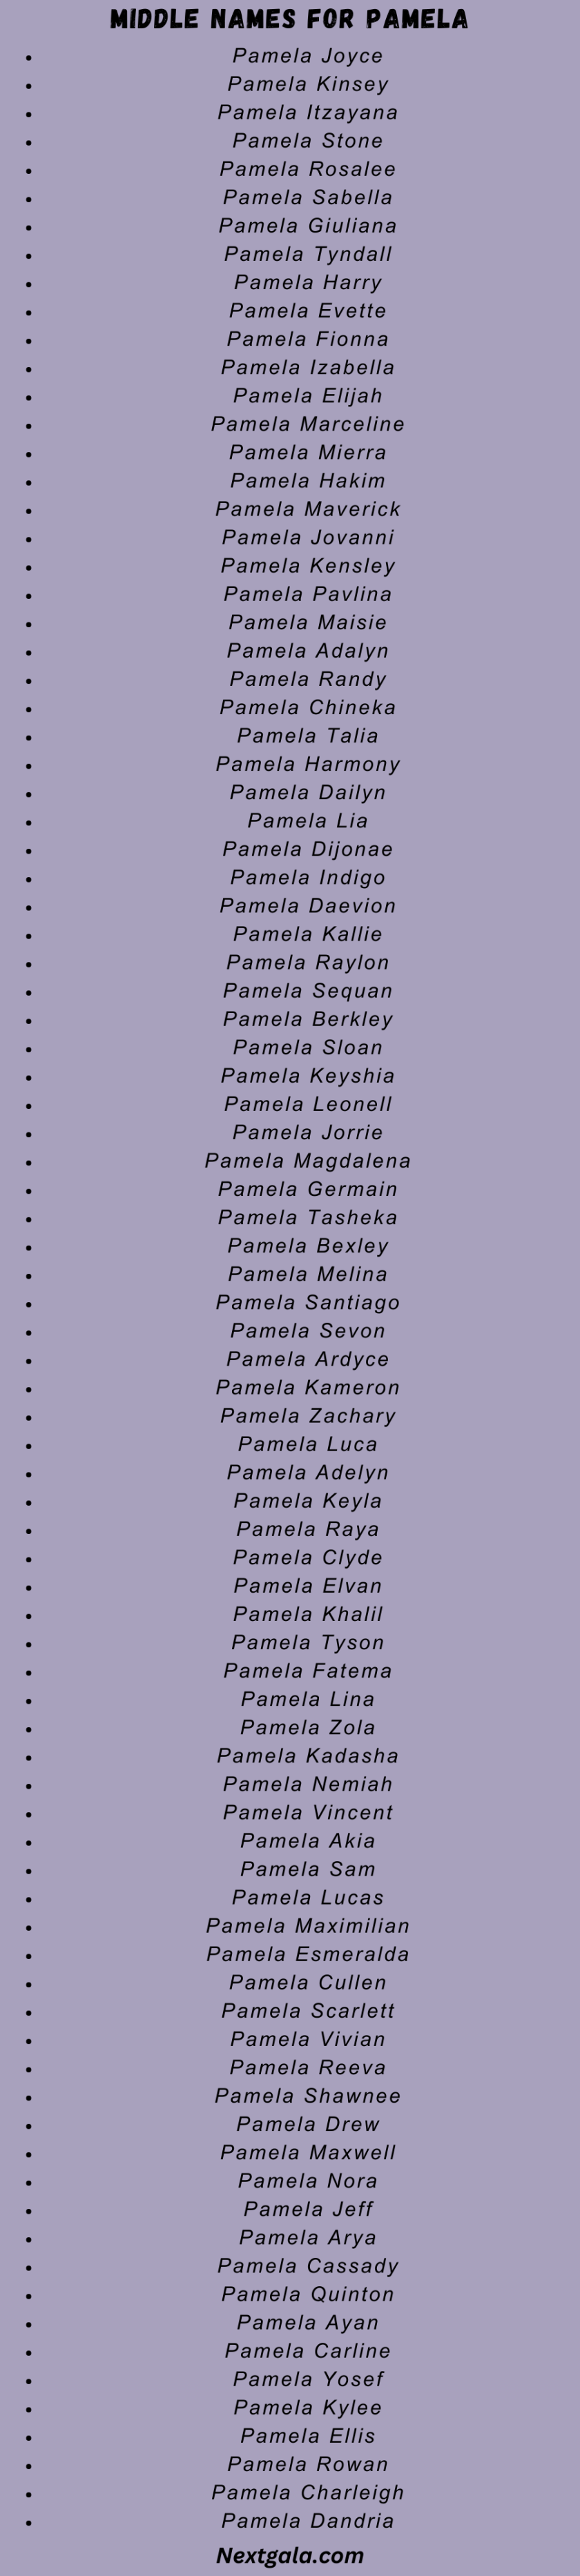 Middle Names for Pamela